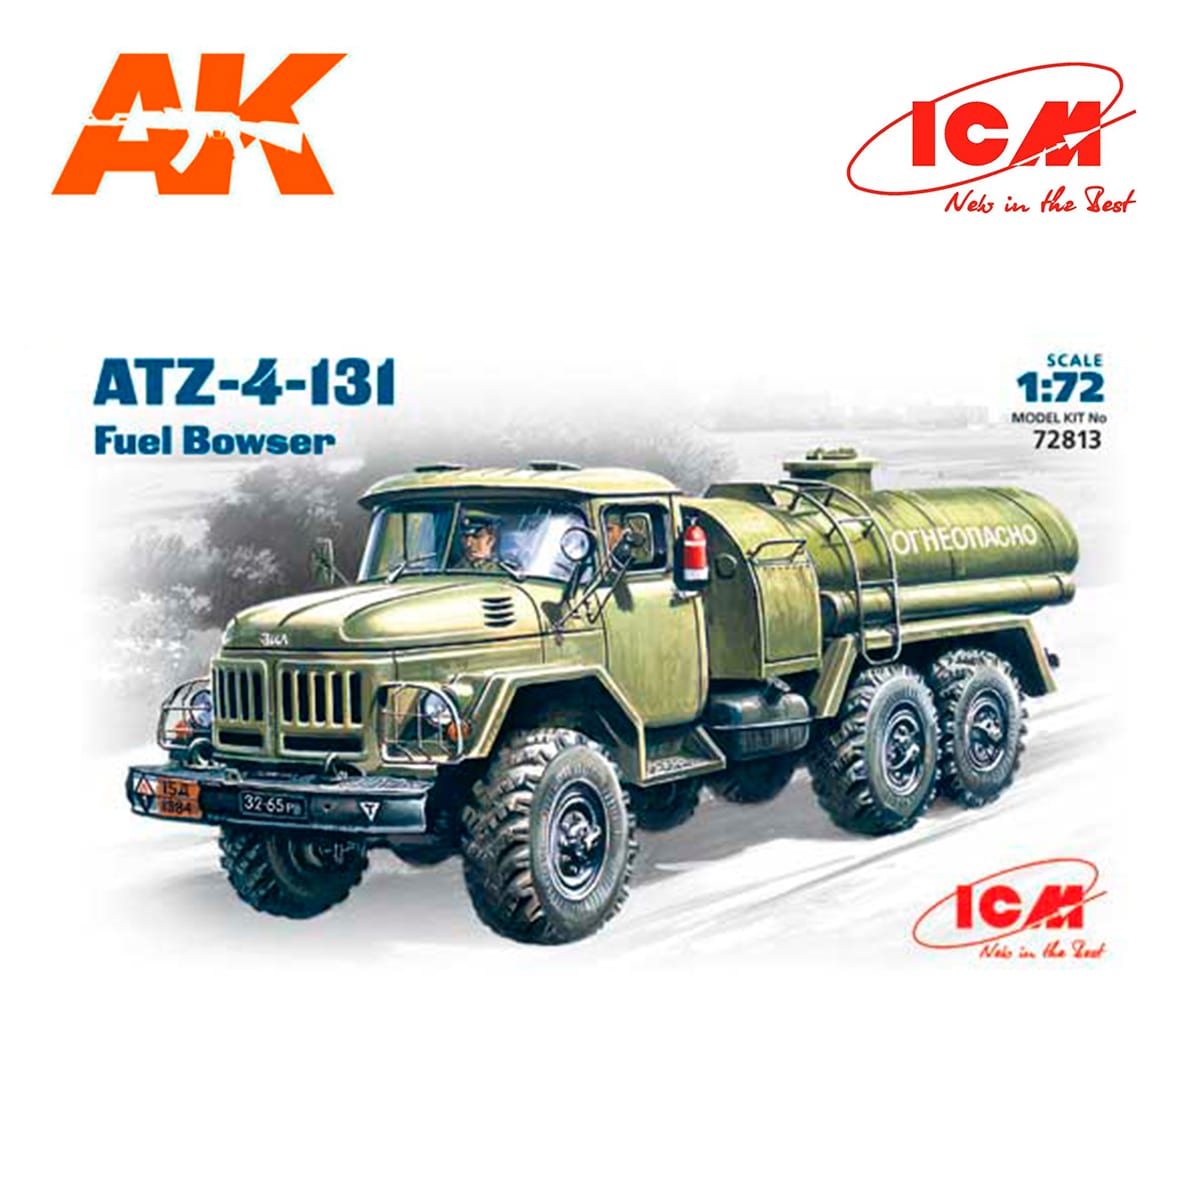 ATZ-4-131, Fuel Bowser 1/72